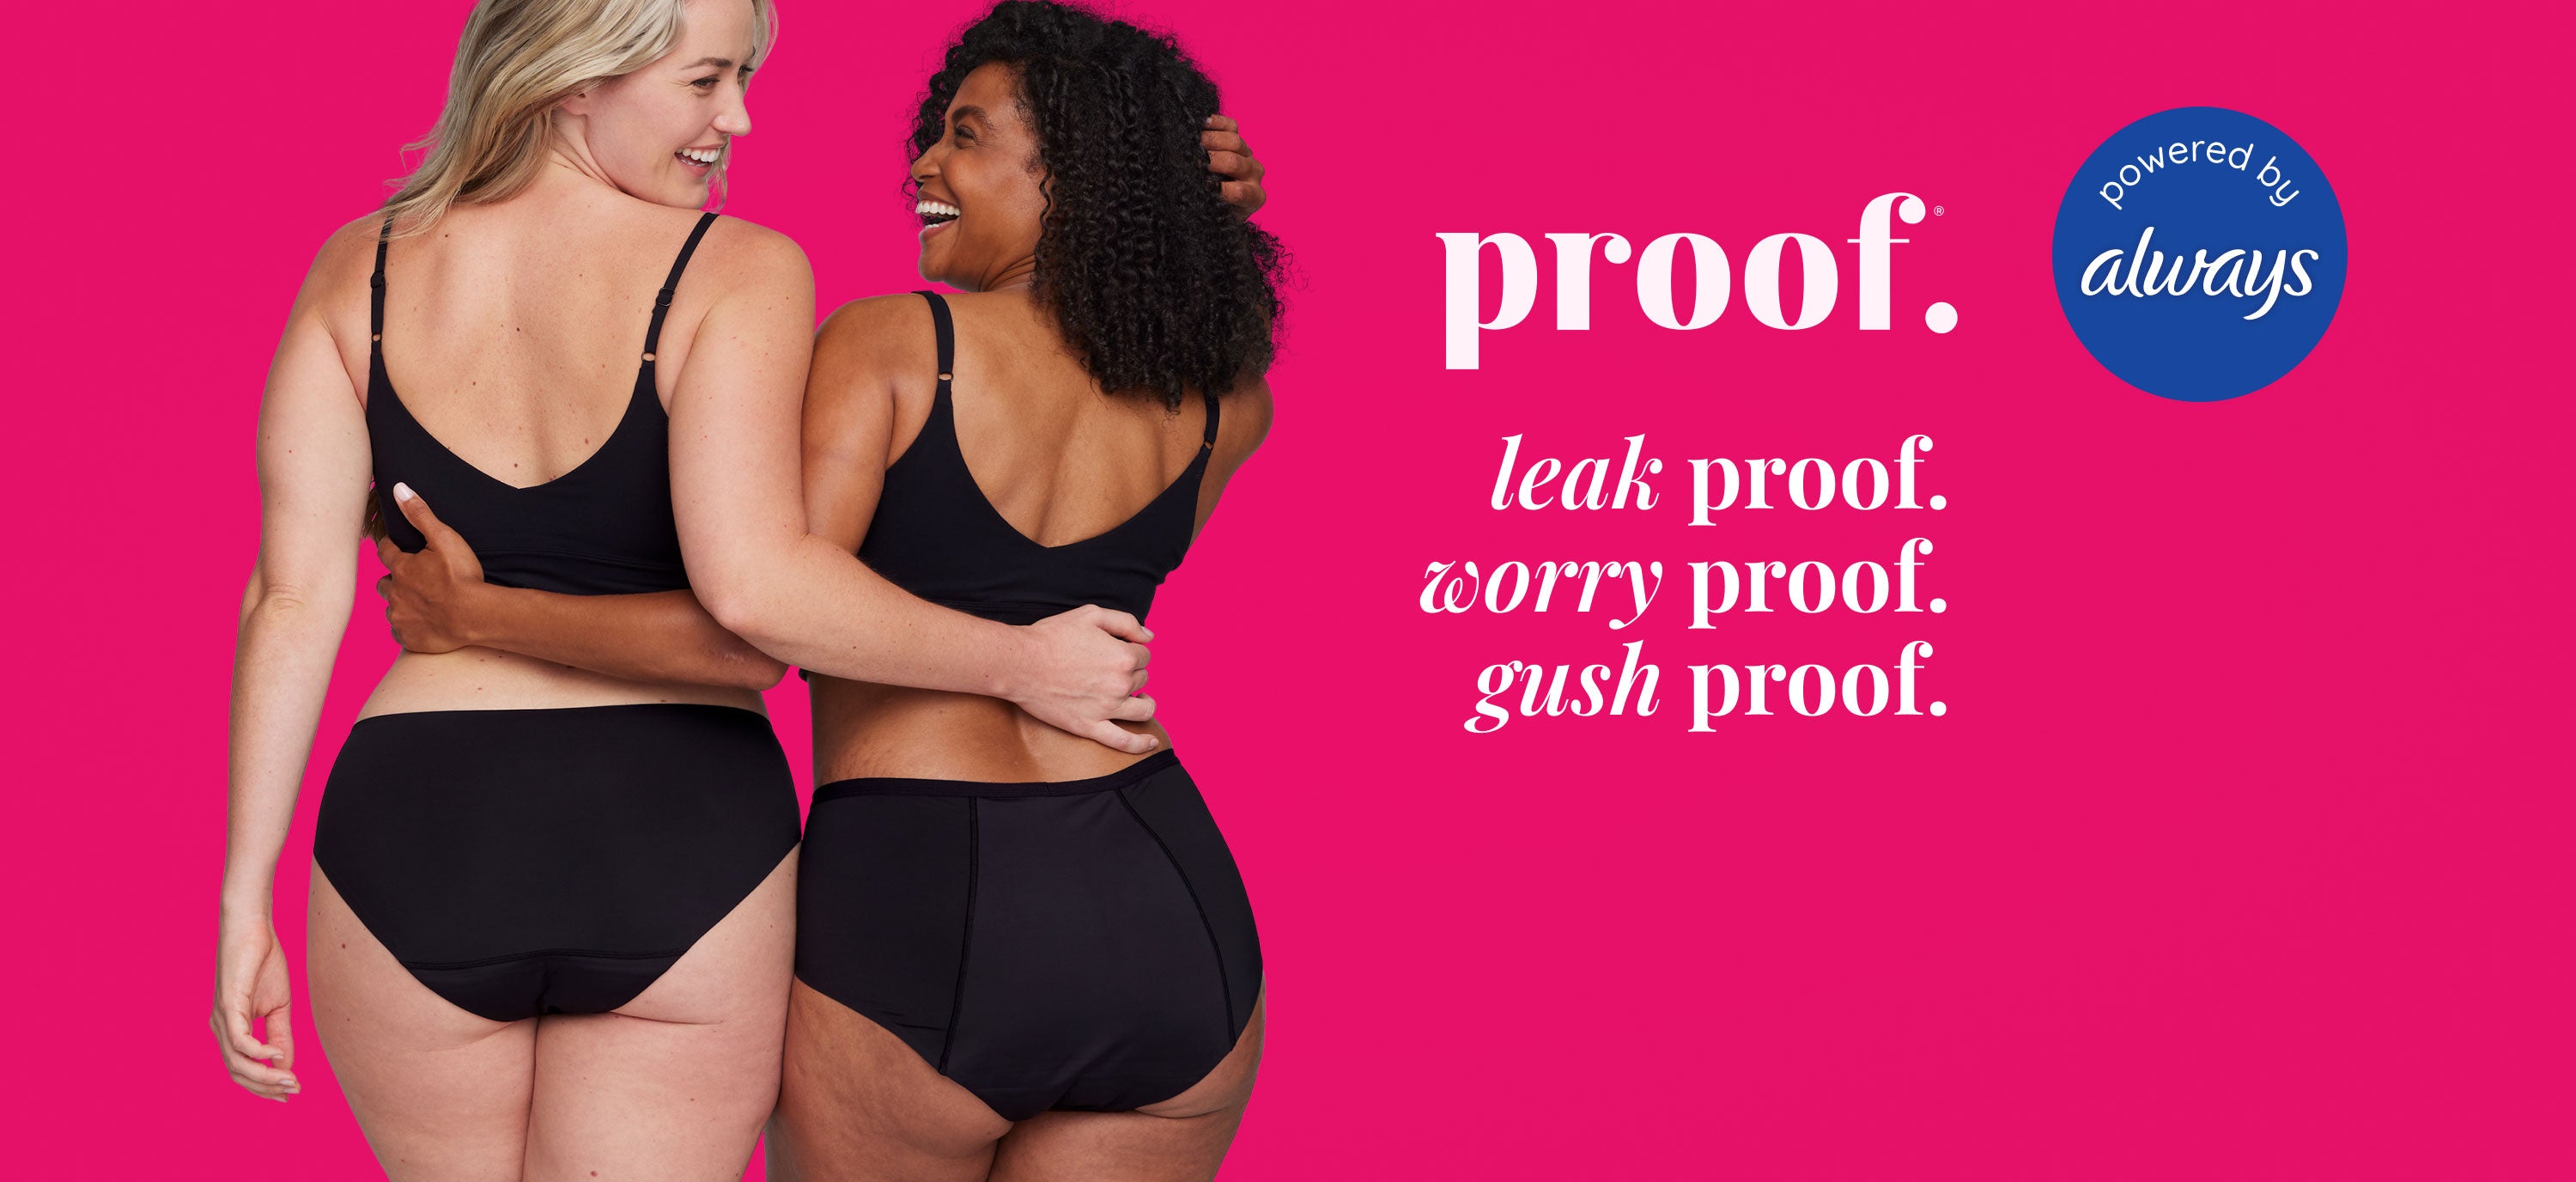 Proof Period Underwear: Leakproof Menstrual Panties